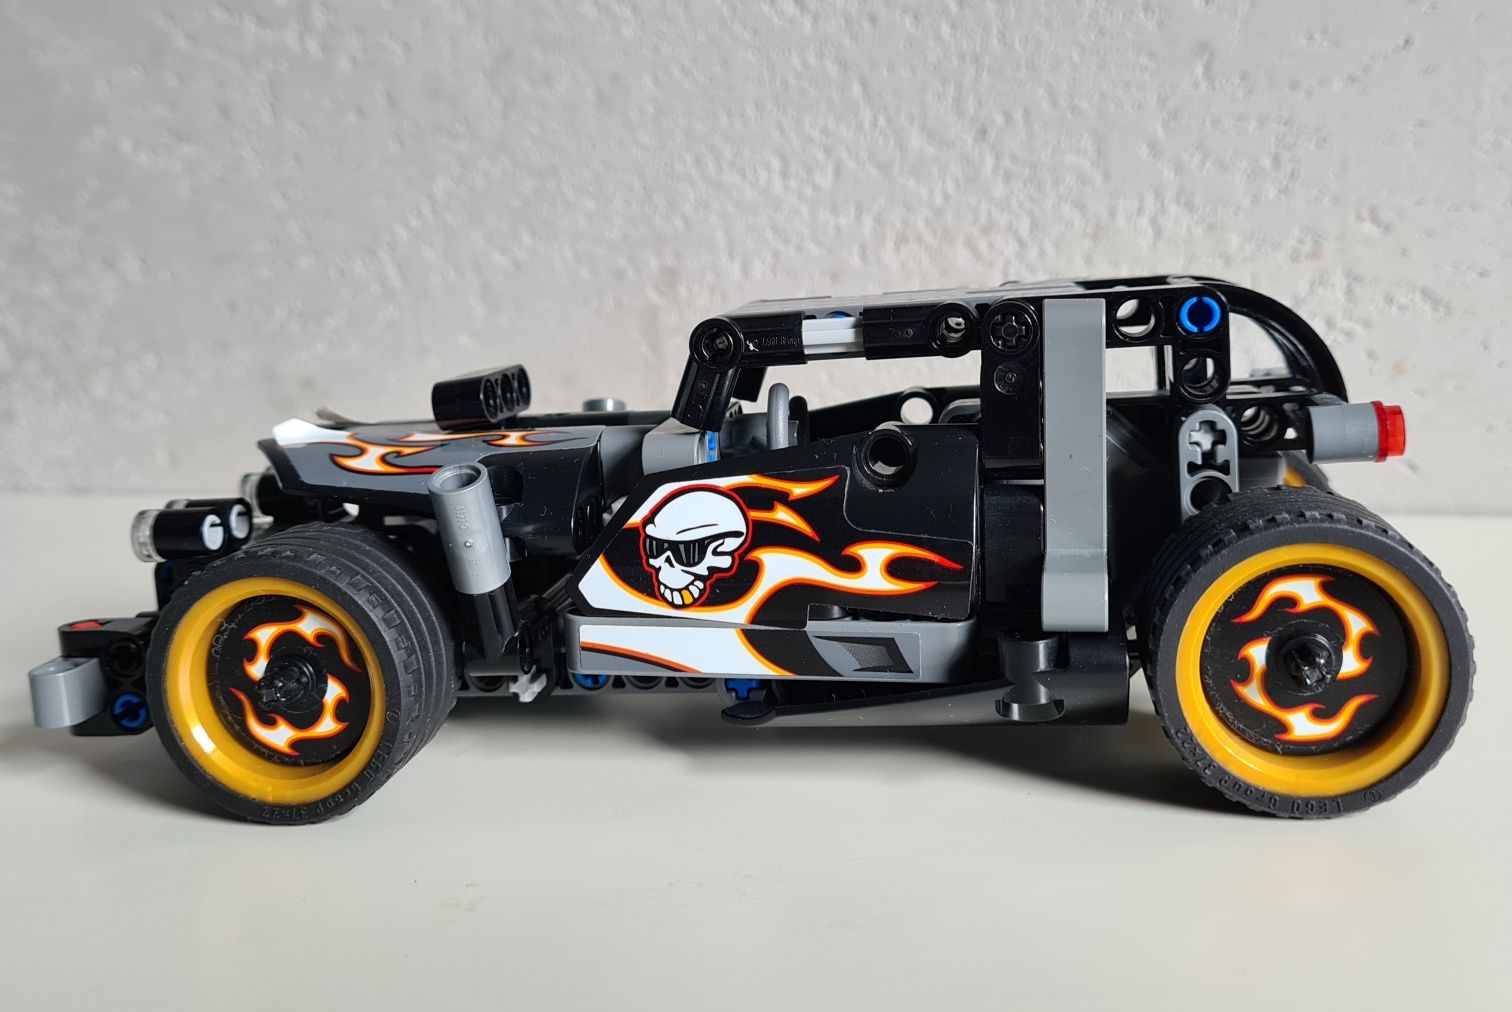 Lego wyścigówka 42046